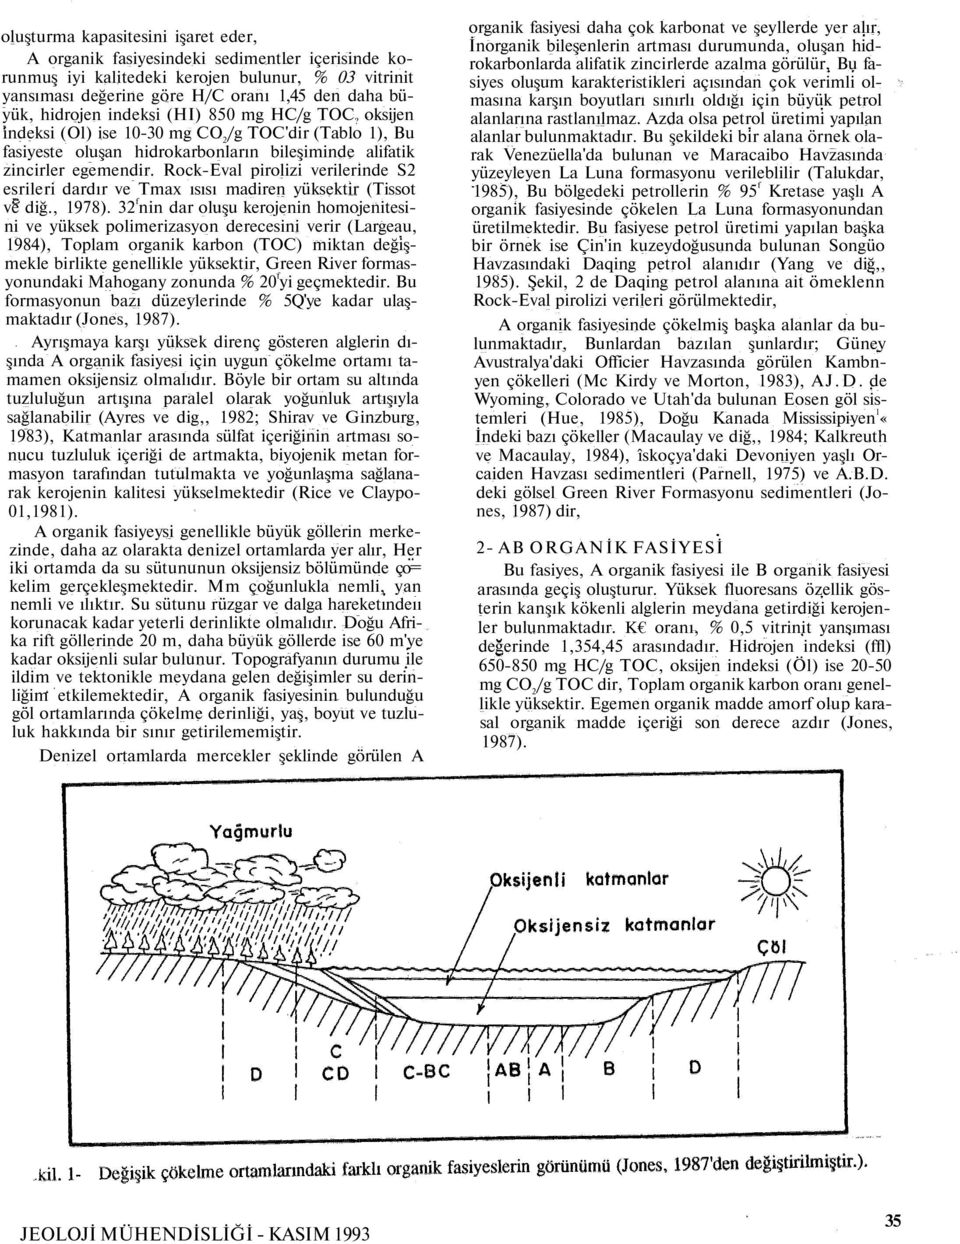 Rock-Eval pirolizi verilerinde S2 esrileri dardır ve Tmax ısısı madiren yüksektir (Tissot ve diğ., 1978).